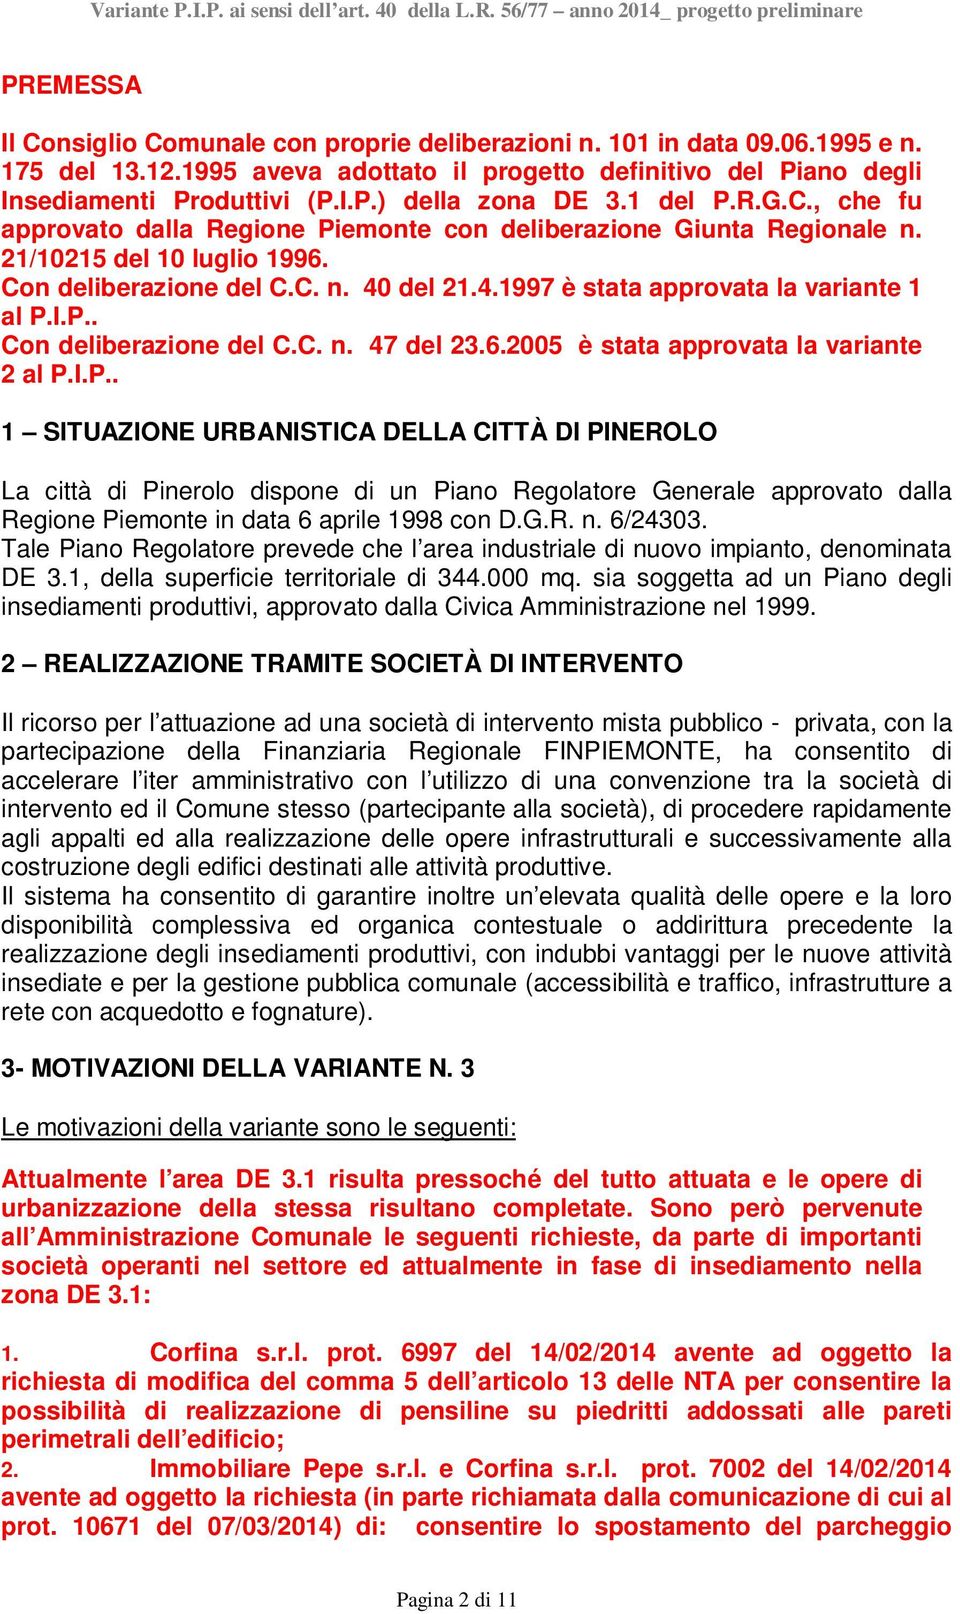 I.P.. Con deliberazione del C.C. n. 47 del 23.6.2005 è stata approvata la variante 2 al P.I.P.. 1 SITUAZIONE URBANISTICA DELLA CITTÀ DI PINEROLO La città di Pinerolo dispone di un Piano Regolatore Generale approvato dalla Regione Piemonte in data 6 aprile 1998 con D.